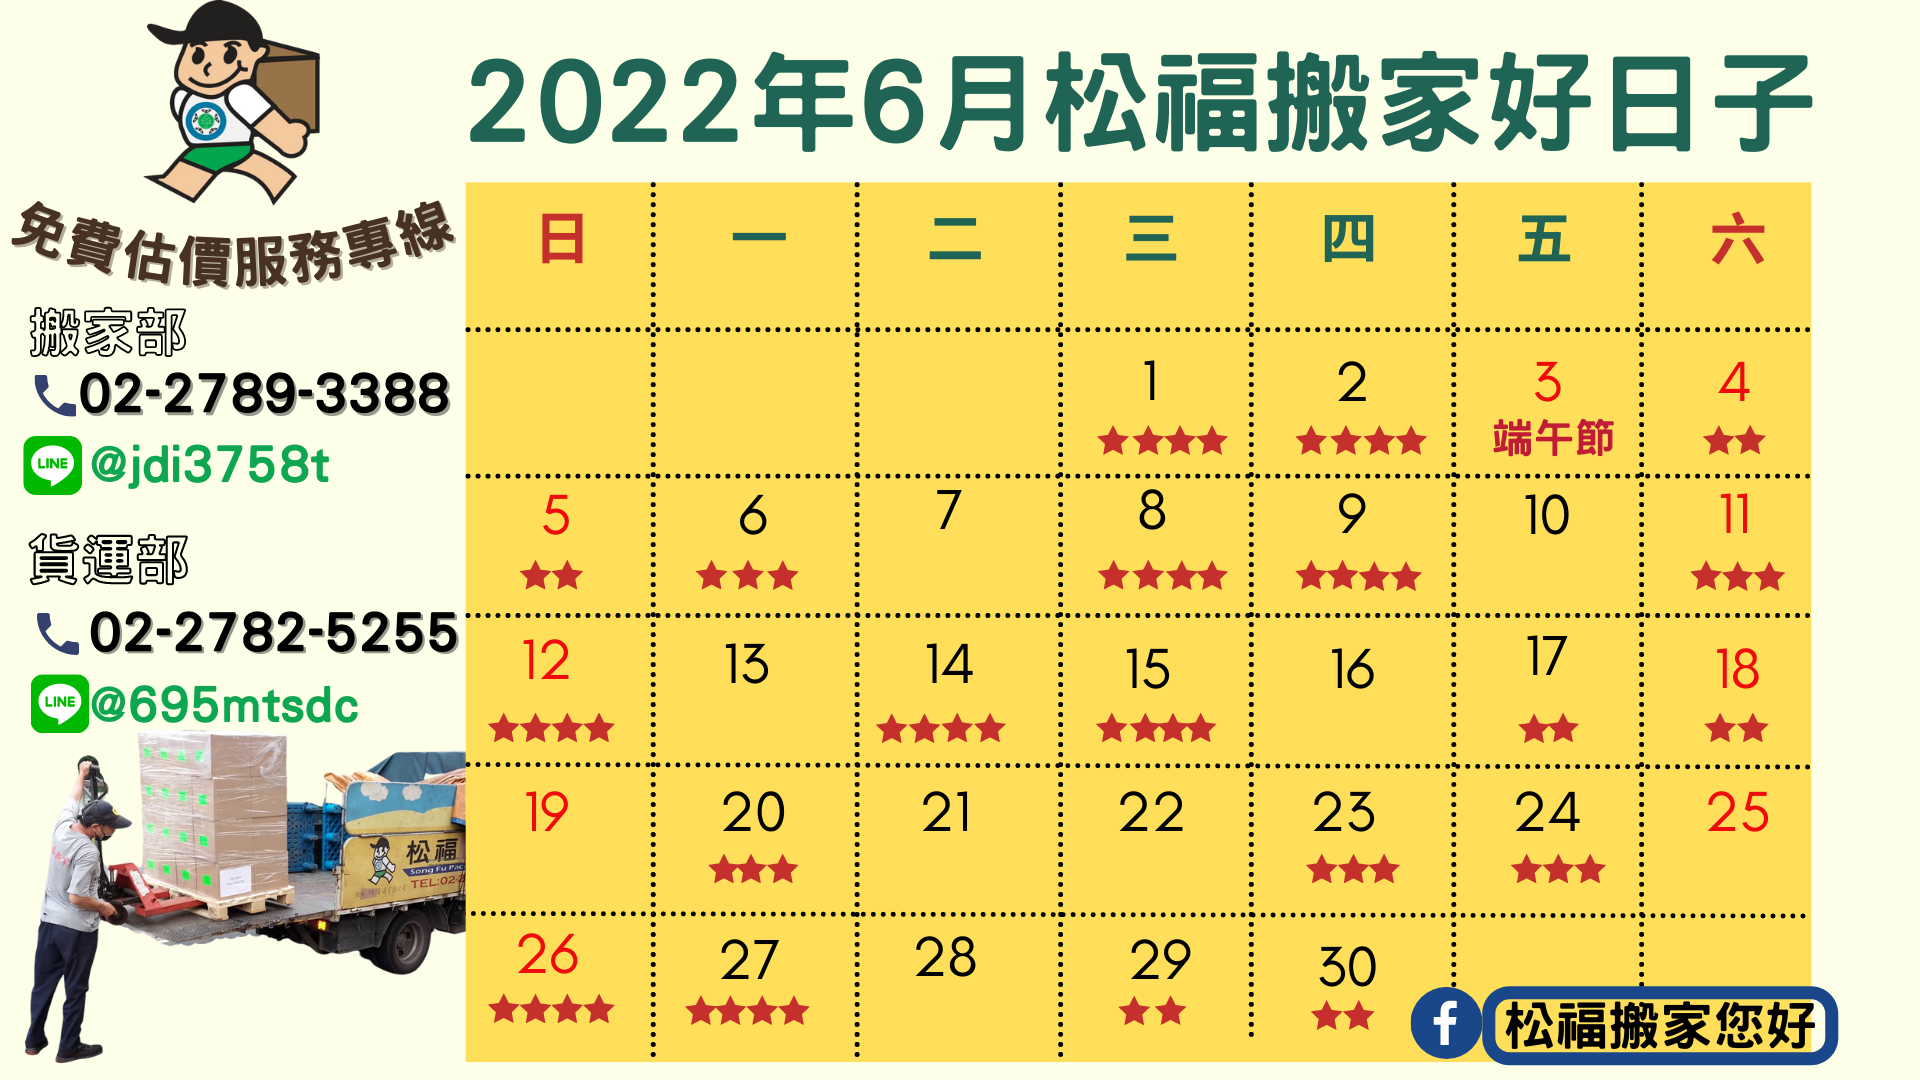 『2022年6月搬家好日子』請找松福搬家您好!推薦台北搬家、公司搬遷、精緻搬家、免動手打包、搬家公司推薦首選!